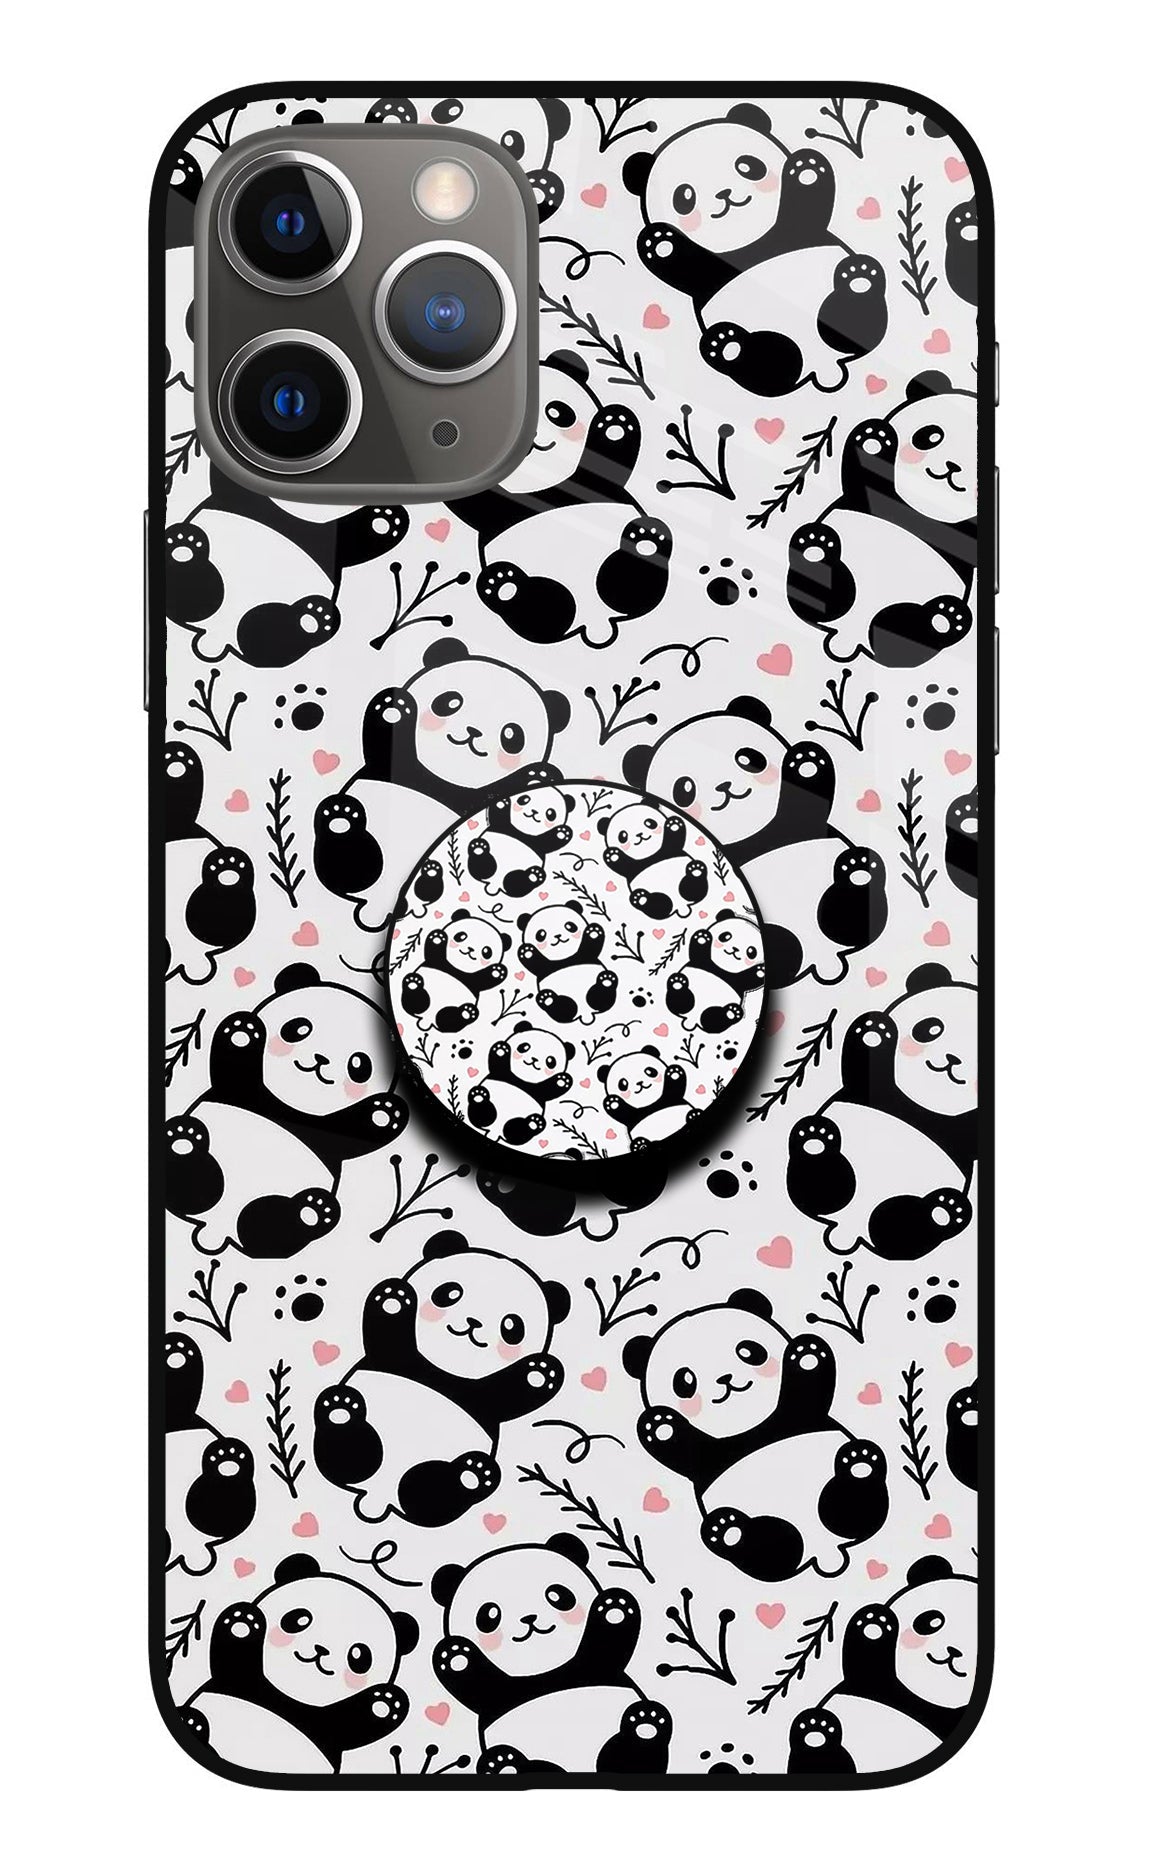 Cute Panda iPhone 11 Pro Max Glass Case